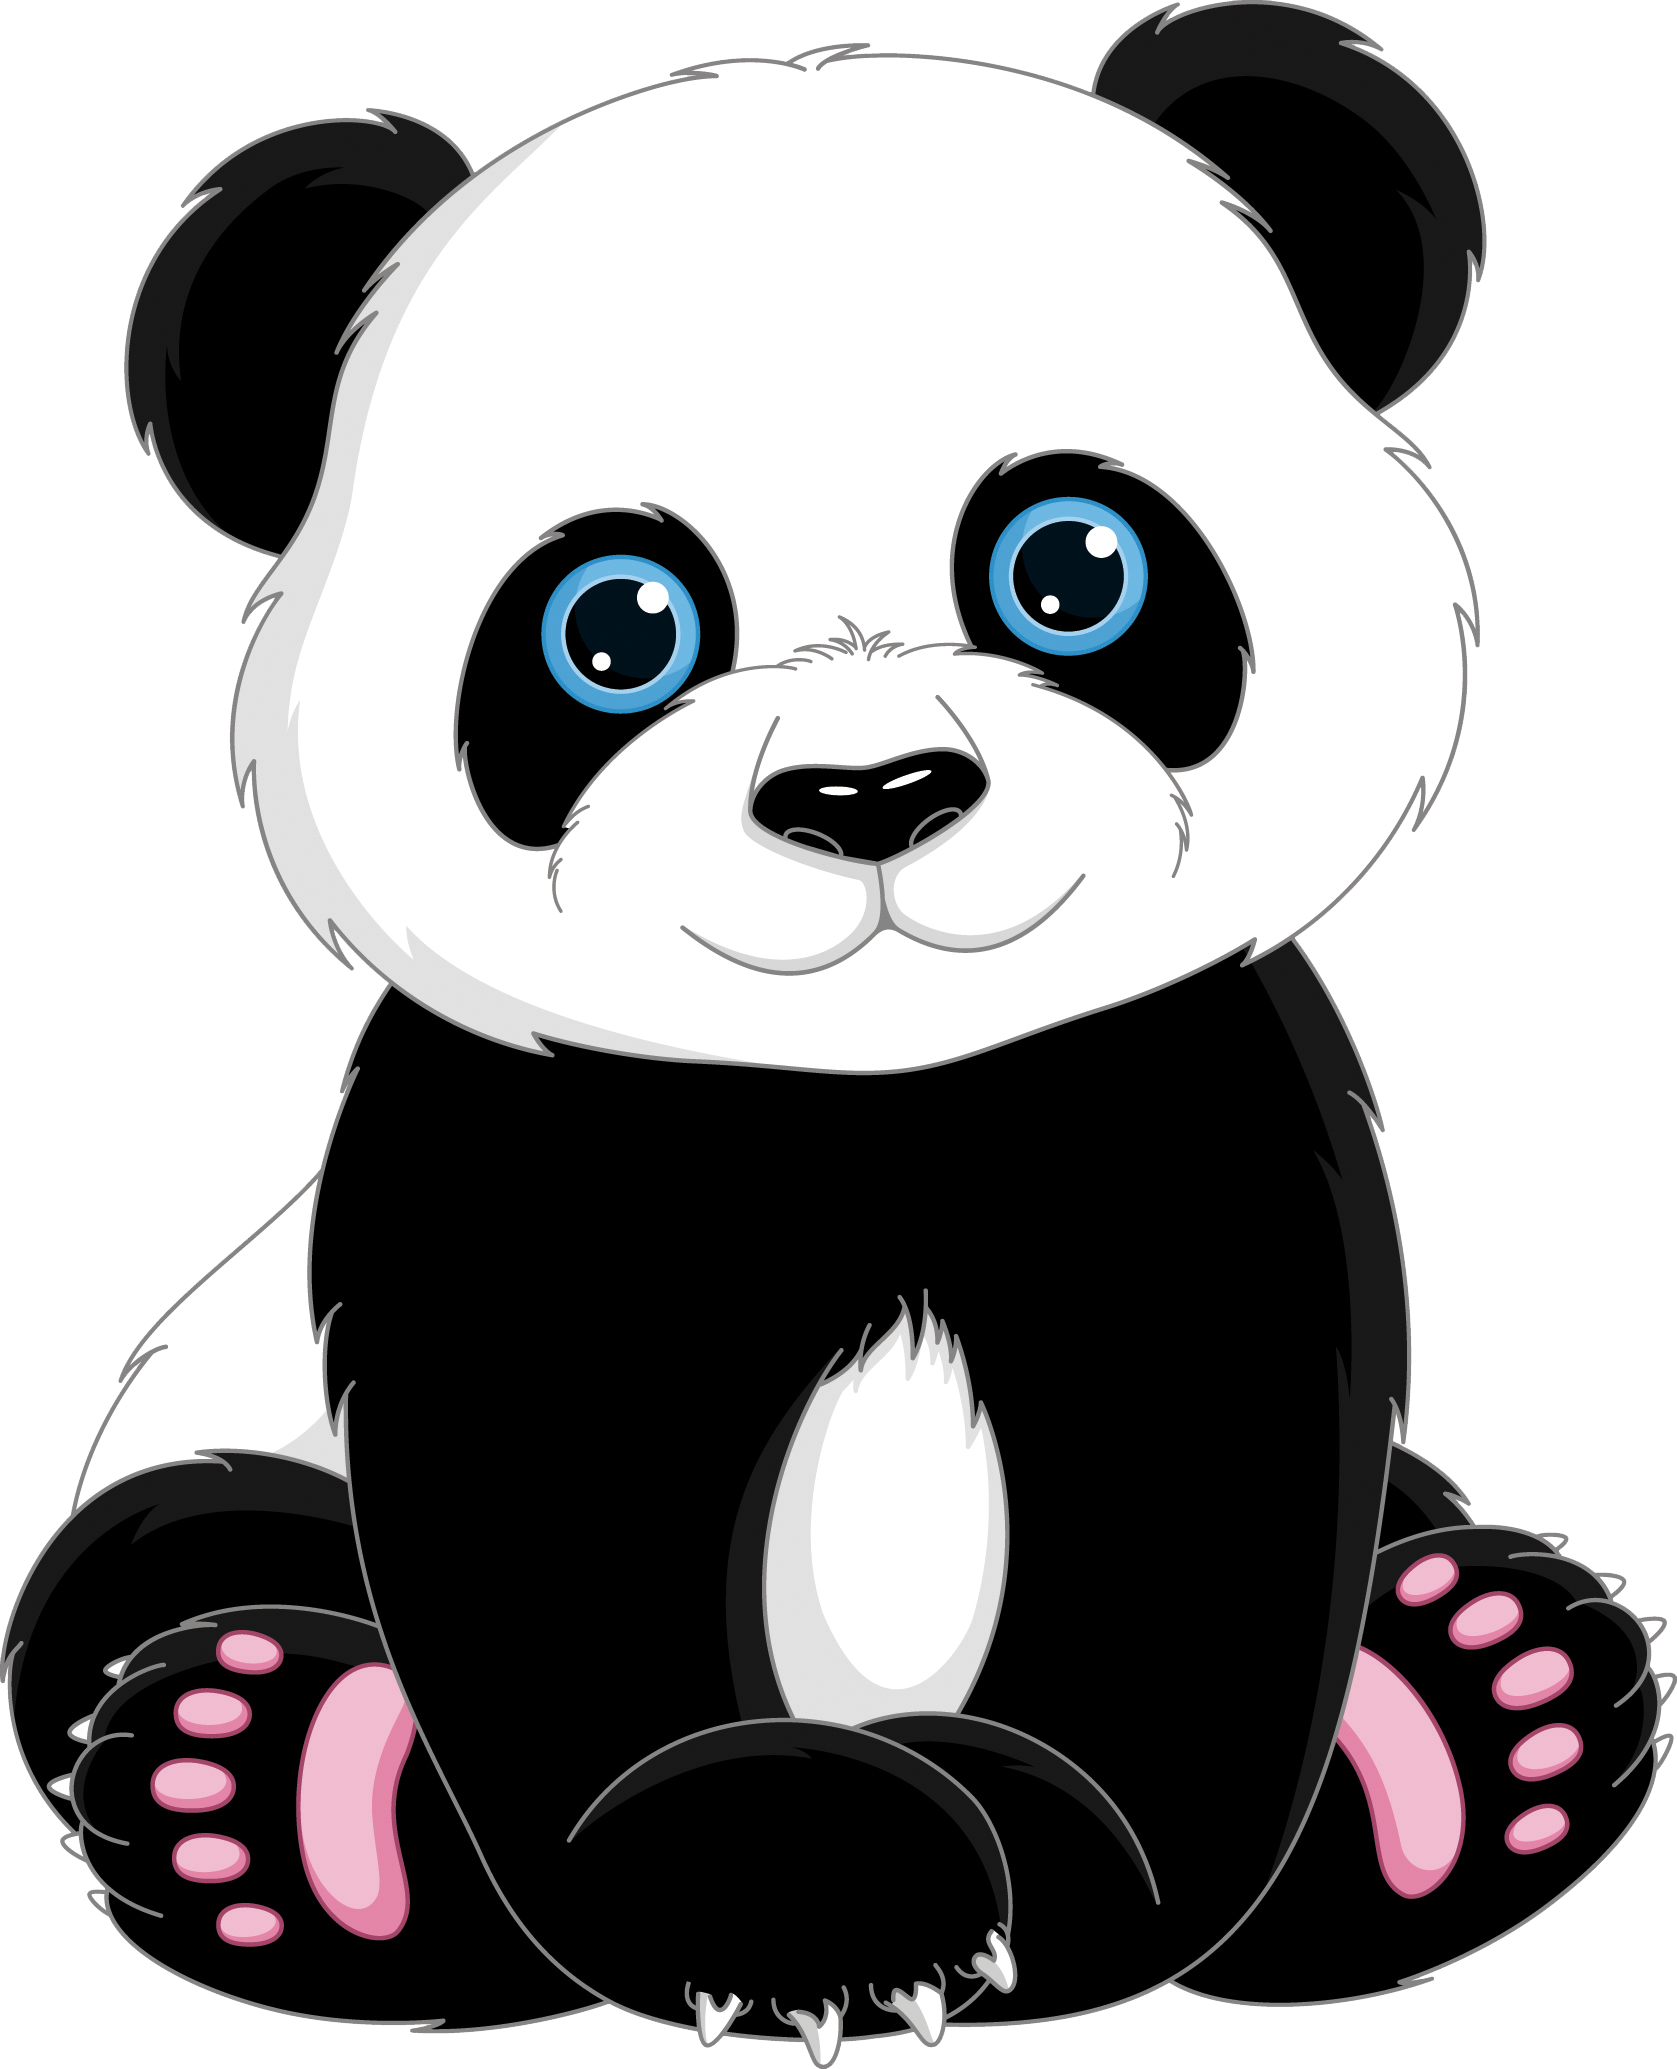 Giant Panda T-shirt Cuteness Clip Art - Cute Cartoon Panda Bear ...